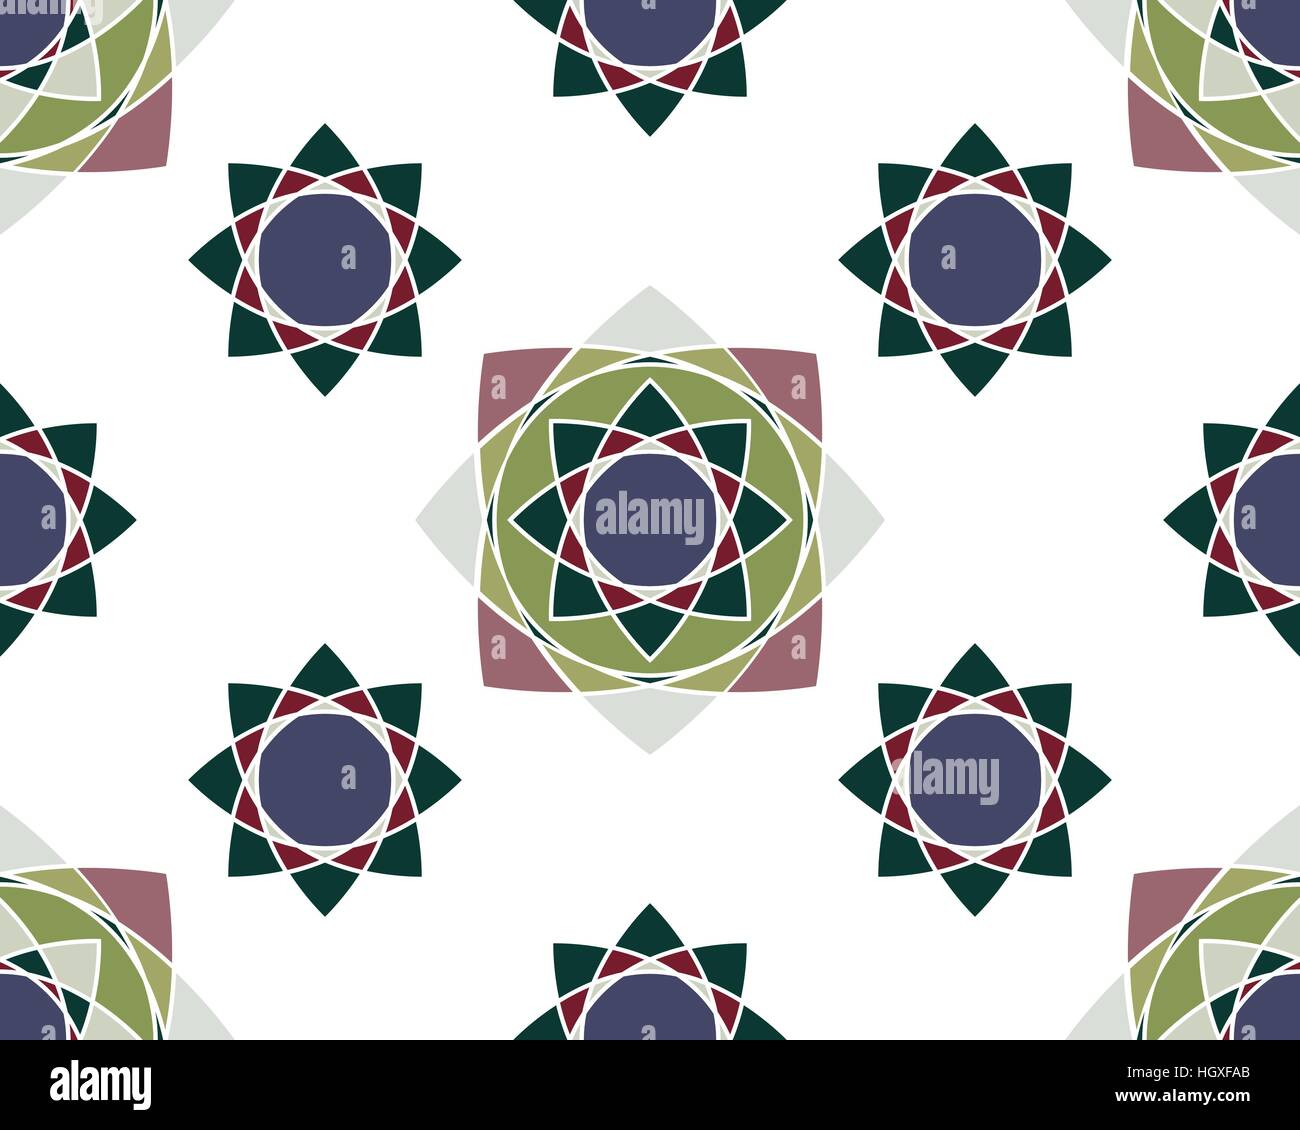 Elegante Verzierungen geometrische Mandala. Alte dekorative Ornament-Muster. Handgezeichnete kreative Vorlage, Vektor Stock Vektor